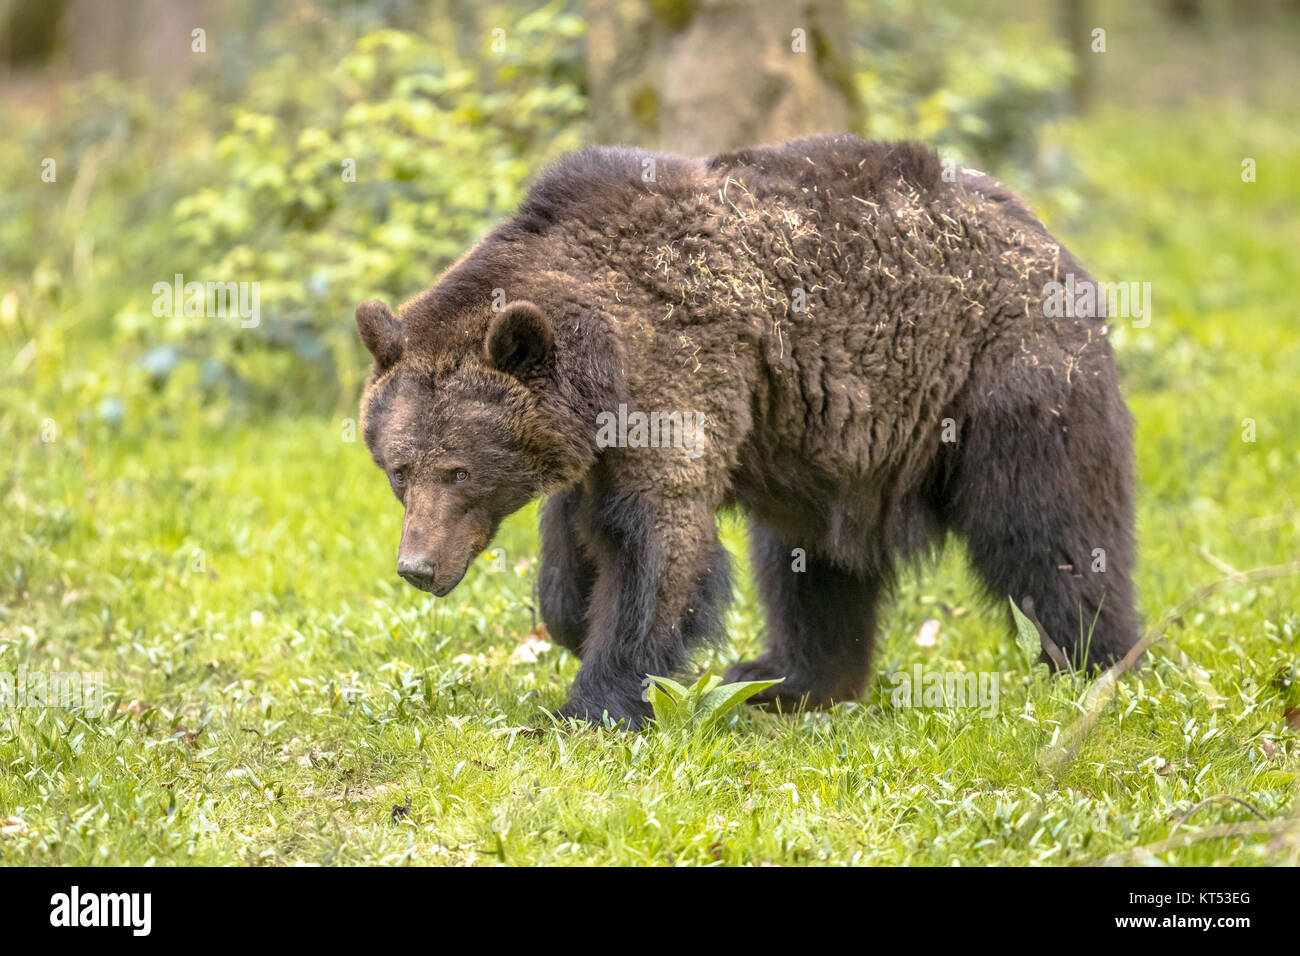 Europäische Braunbär (Ursus arctos) Nahrungssuche im Lebensraum Wald. Dies ist der am weitesten verbreiteten tragen und ist in weiten Teilen der nördlichen Eurasien gefunden Stockfoto